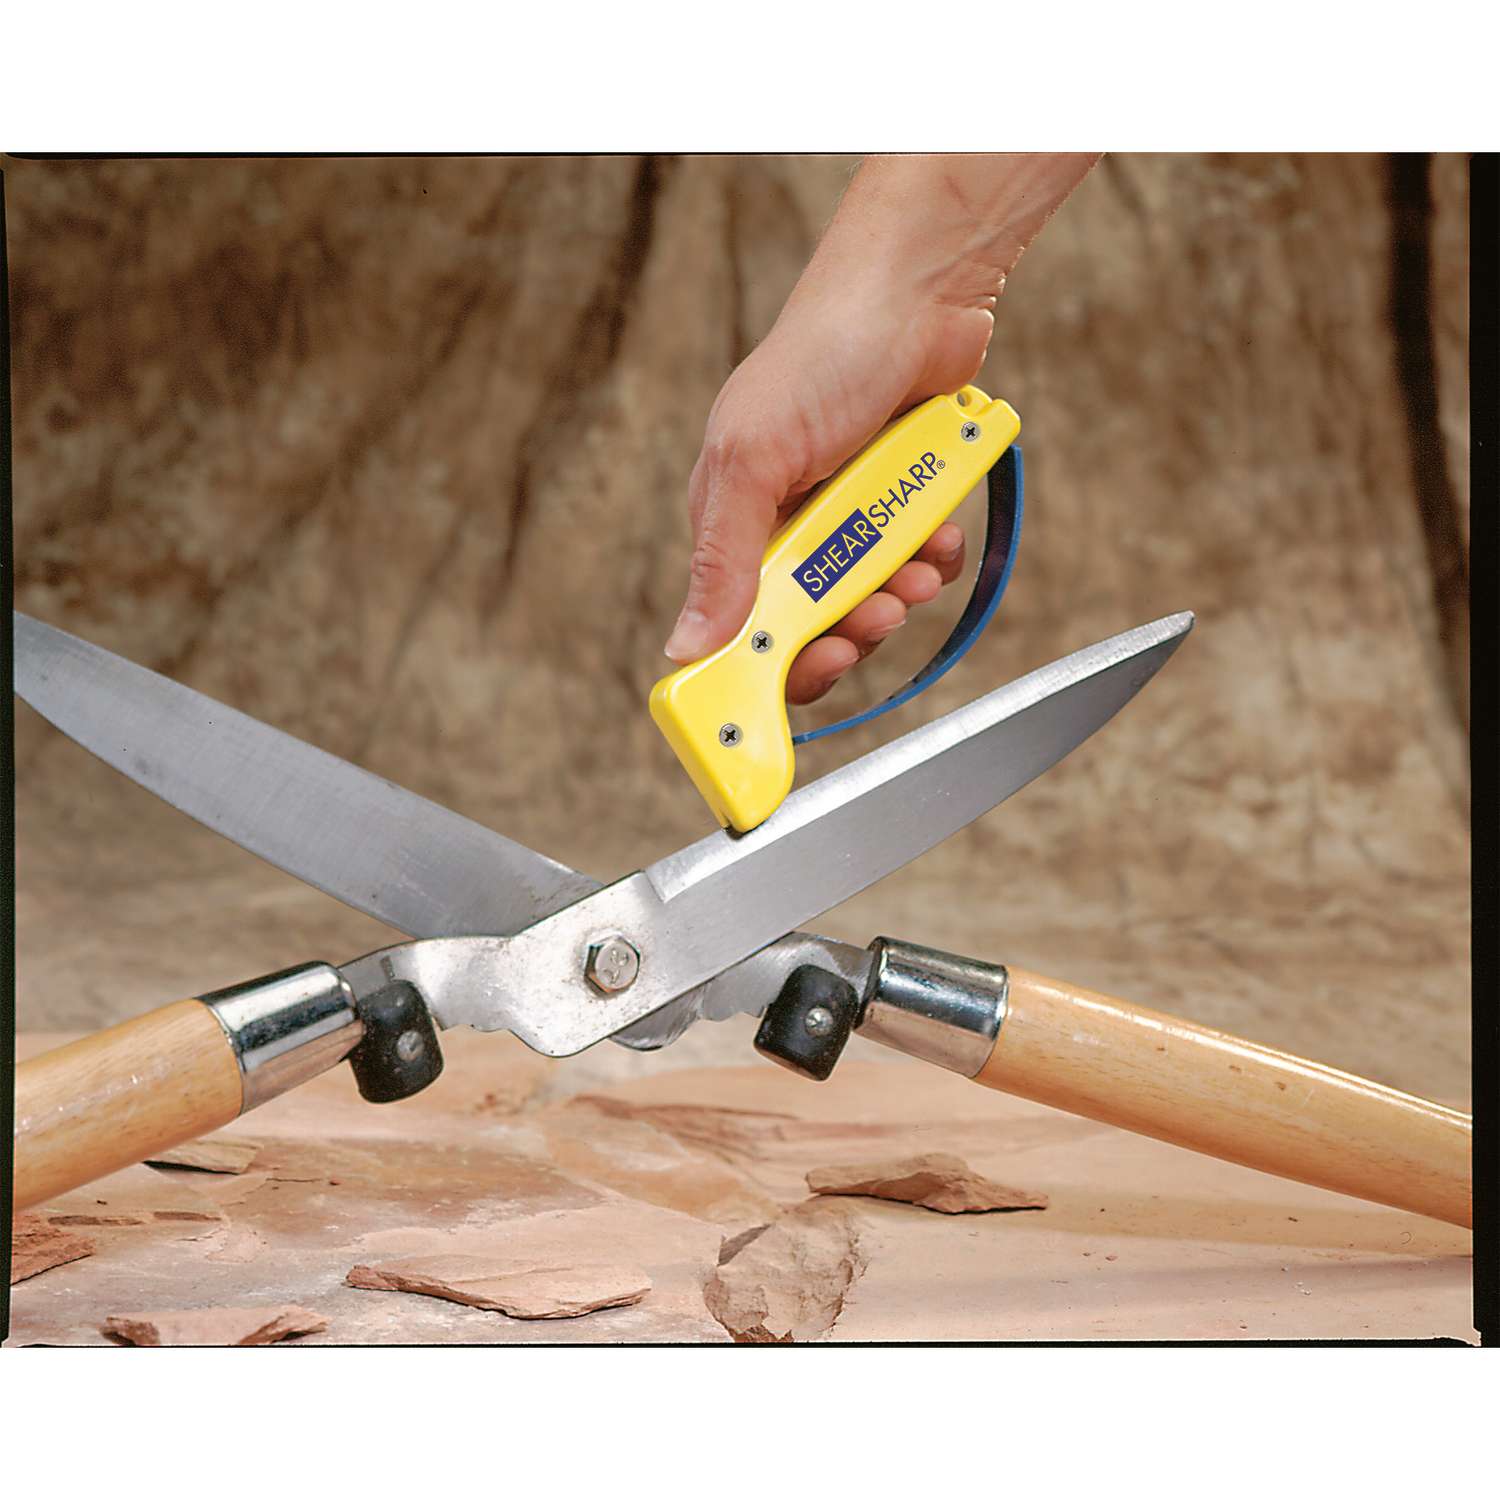  AccuSharp ShearSharp Scissors Sharpener - Sharpener for Scissors,  Garden Shears, Kitchen Shears, Hedge Clippers - Diamond-Honed Tungsten  Carbide - Yellow : Home & Kitchen